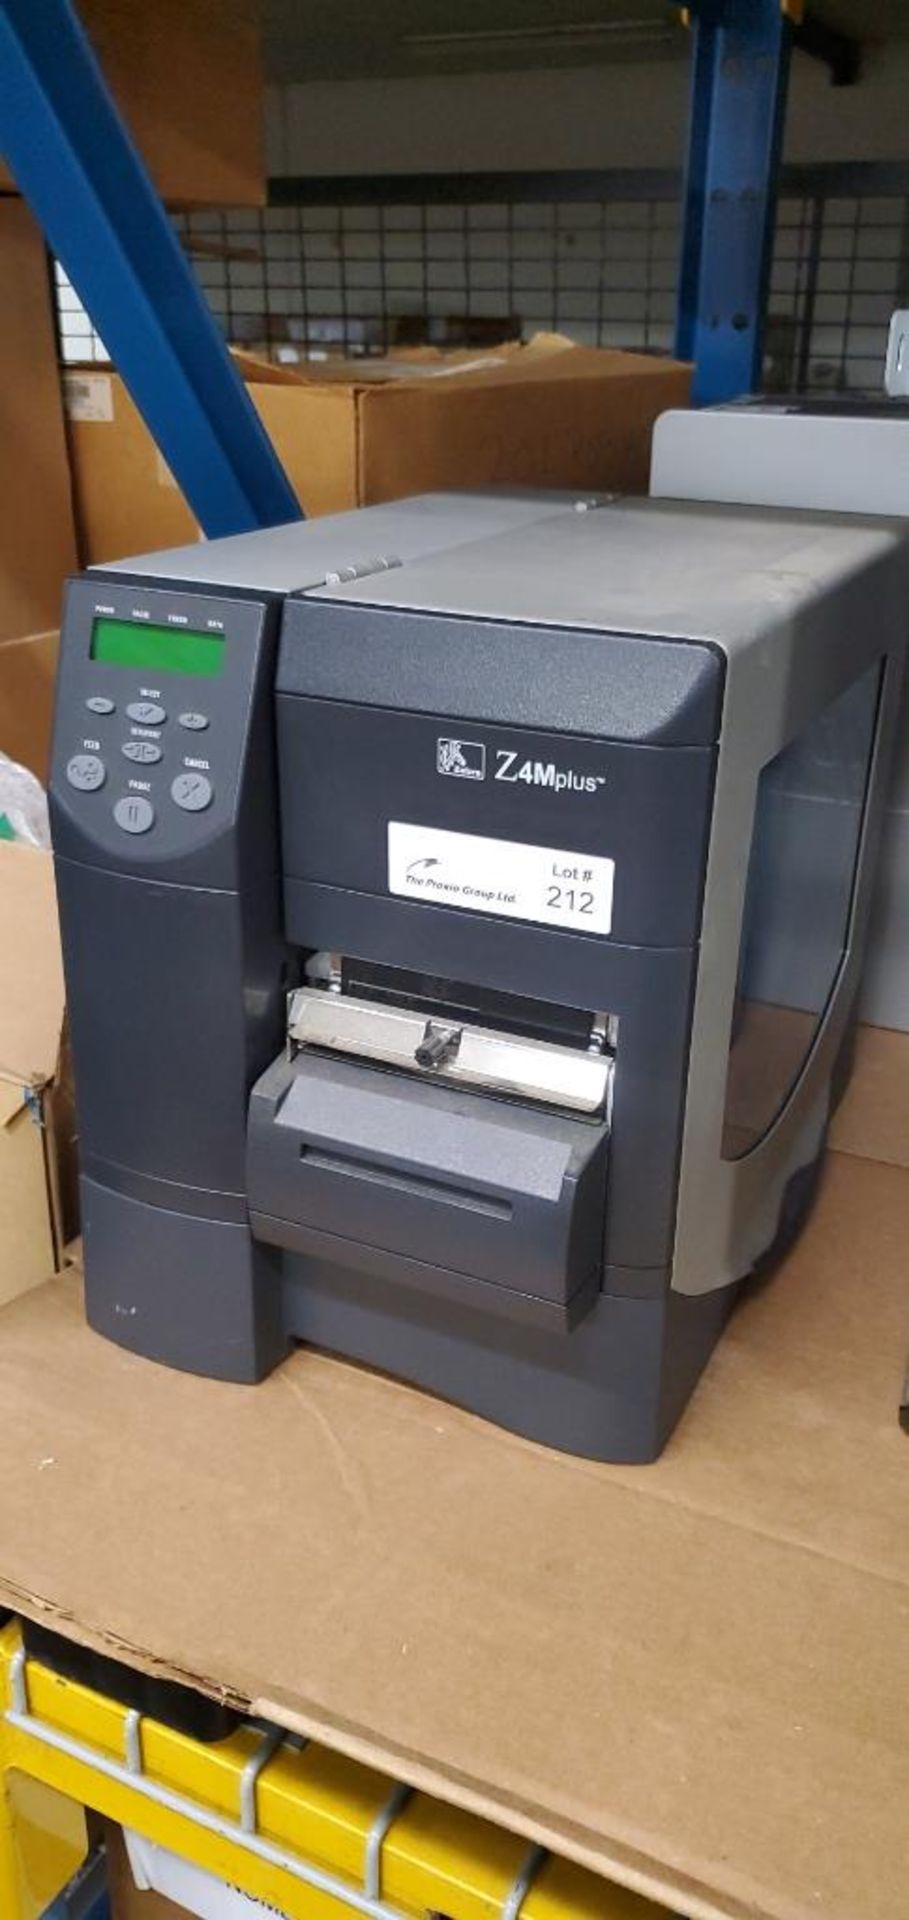 Zebra Model Z4M Plus Thermal Label Printer